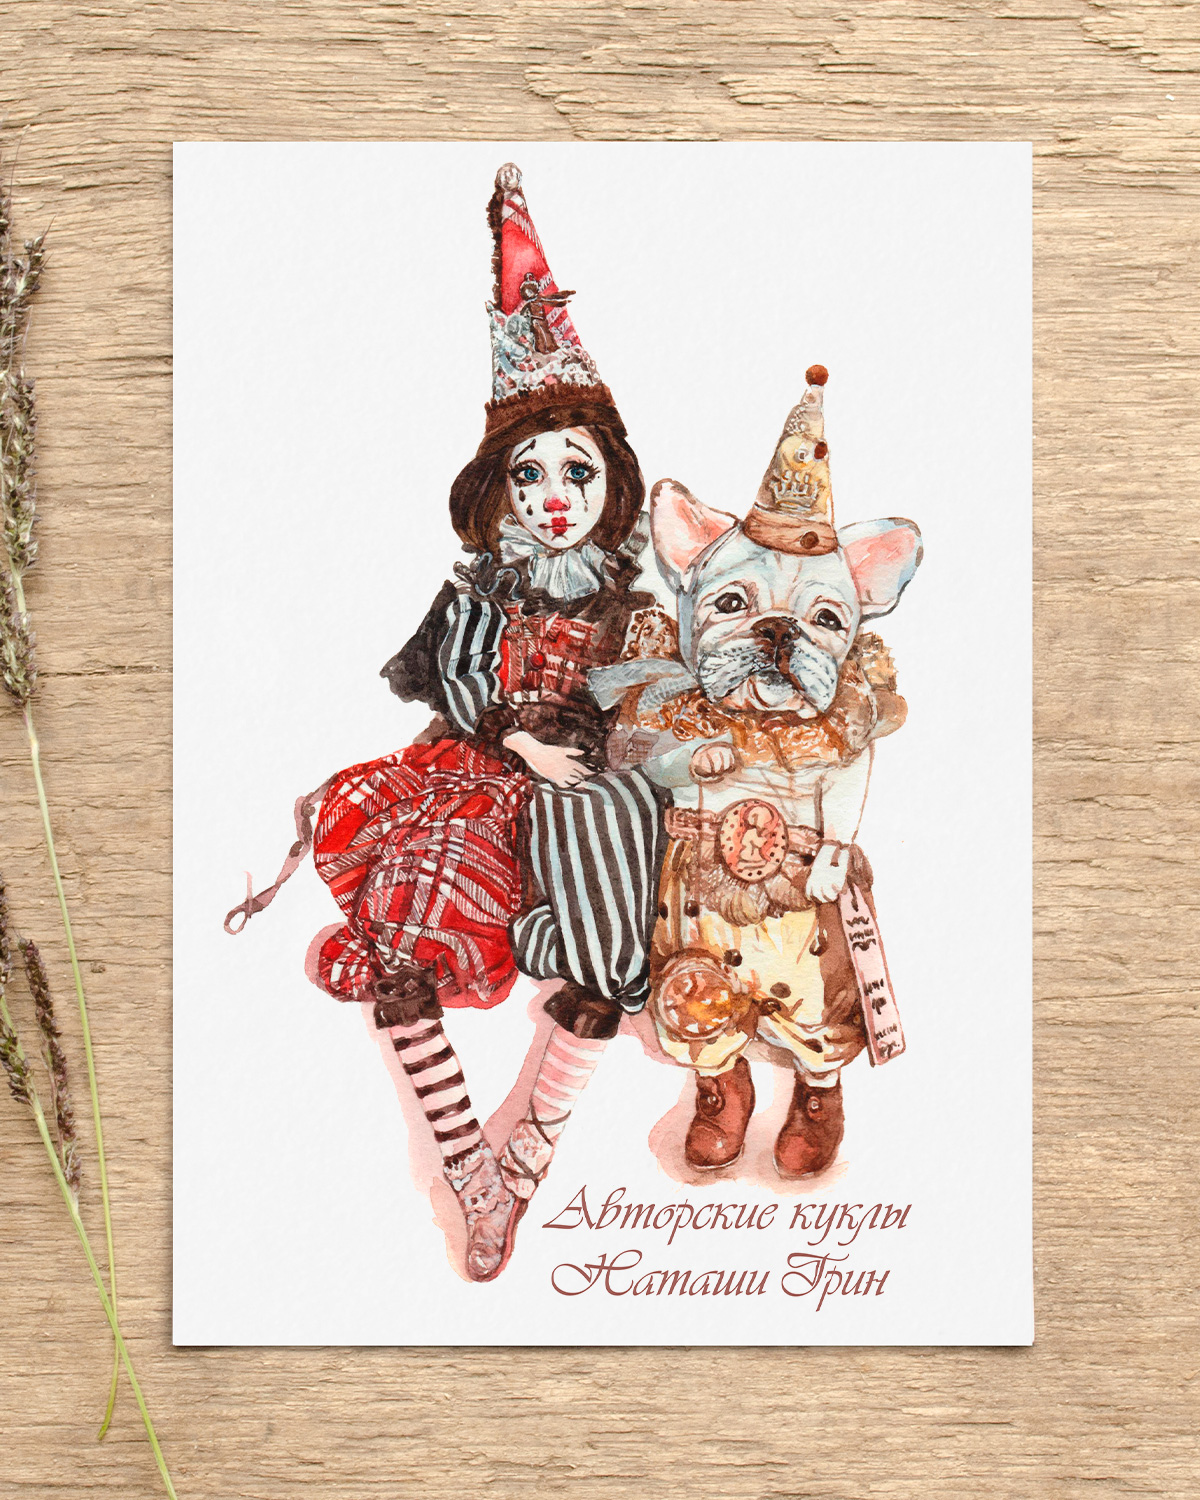 акварельная почтовая открытка магазина авторских кукол